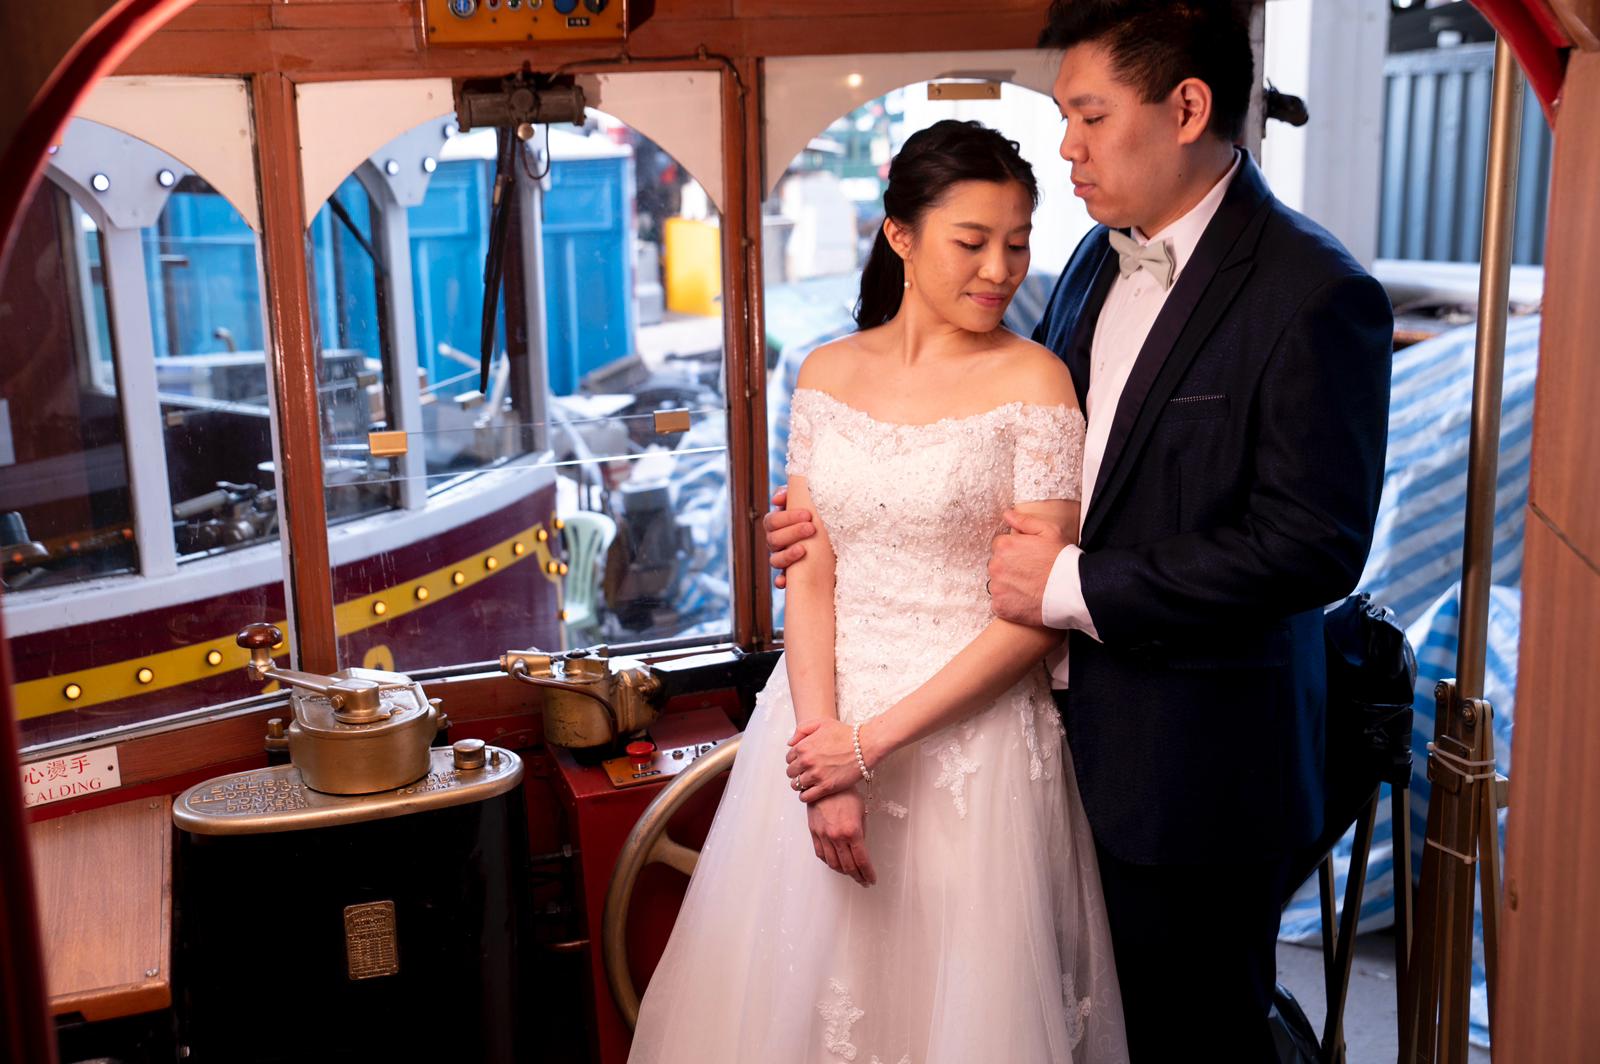 香港電車特色Prewedding化妝婚紗攝影推介套餐